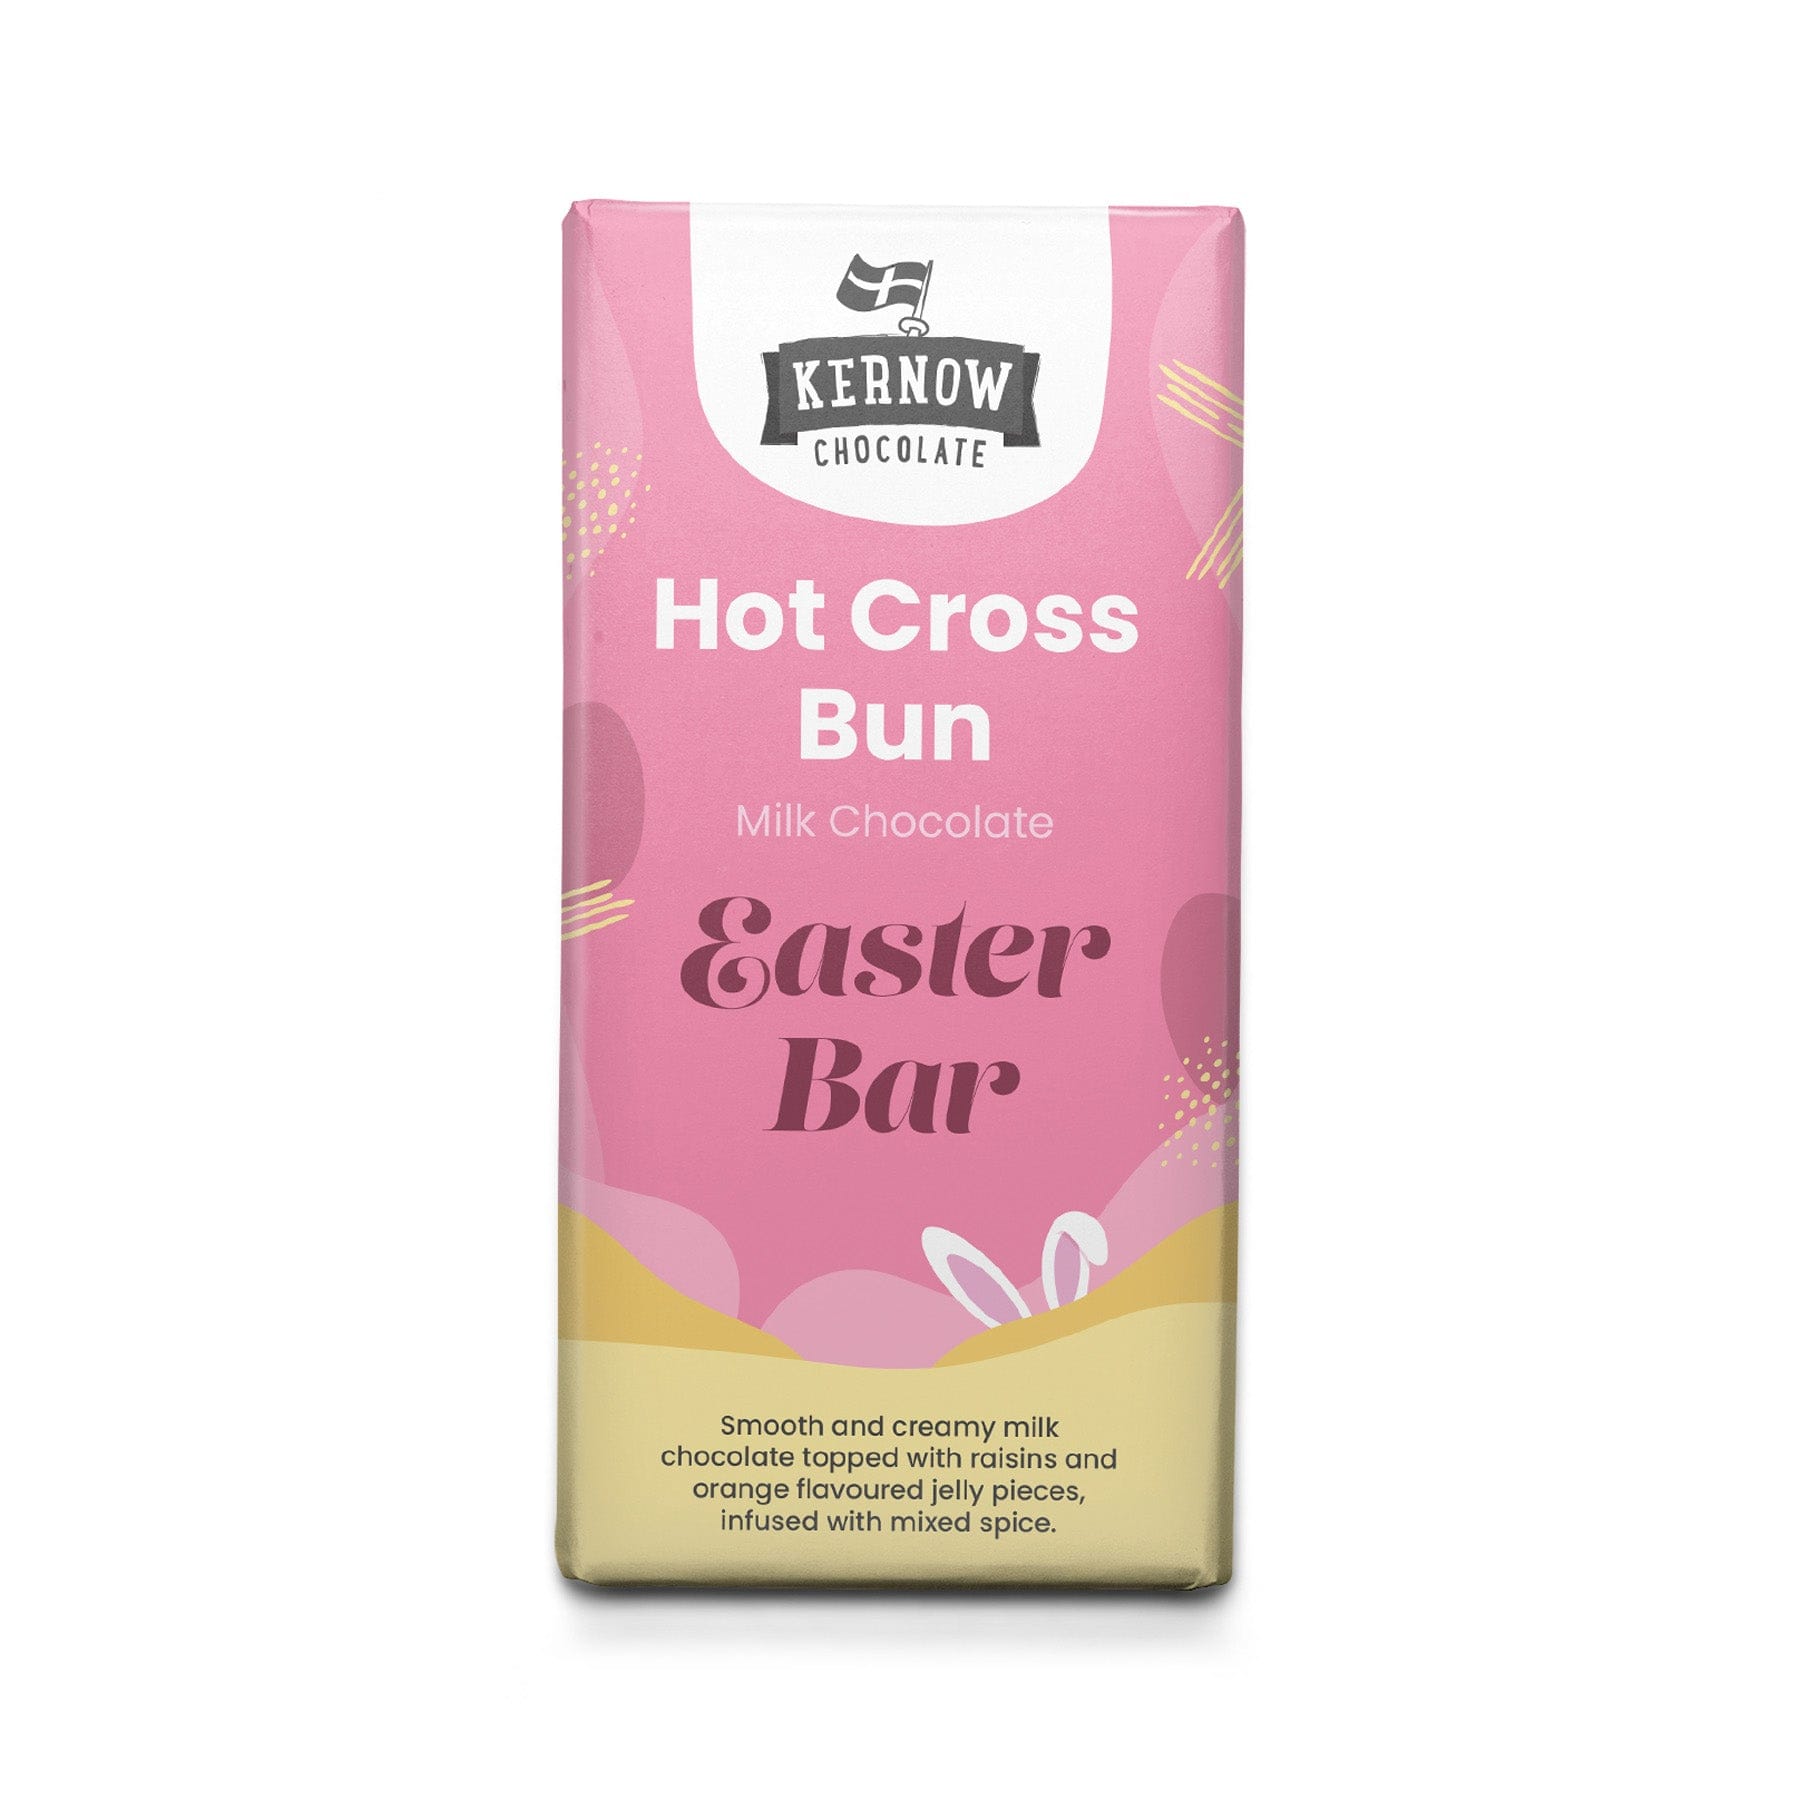 Hot cross bun chocolate bar 100g